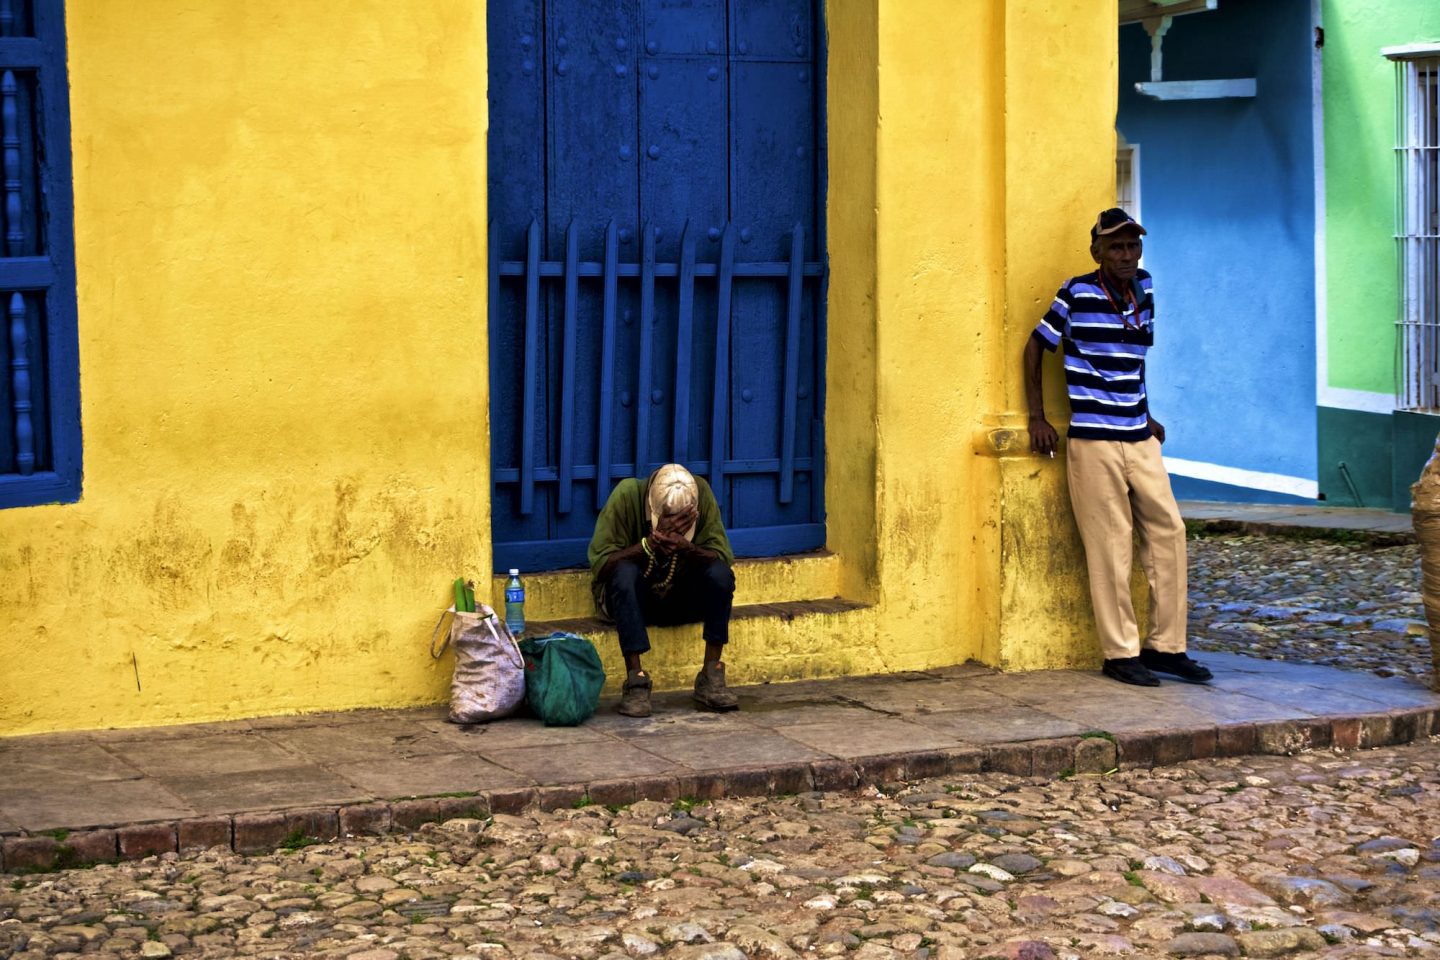 Cuban men in Trinidad. Daily life in Cuba.